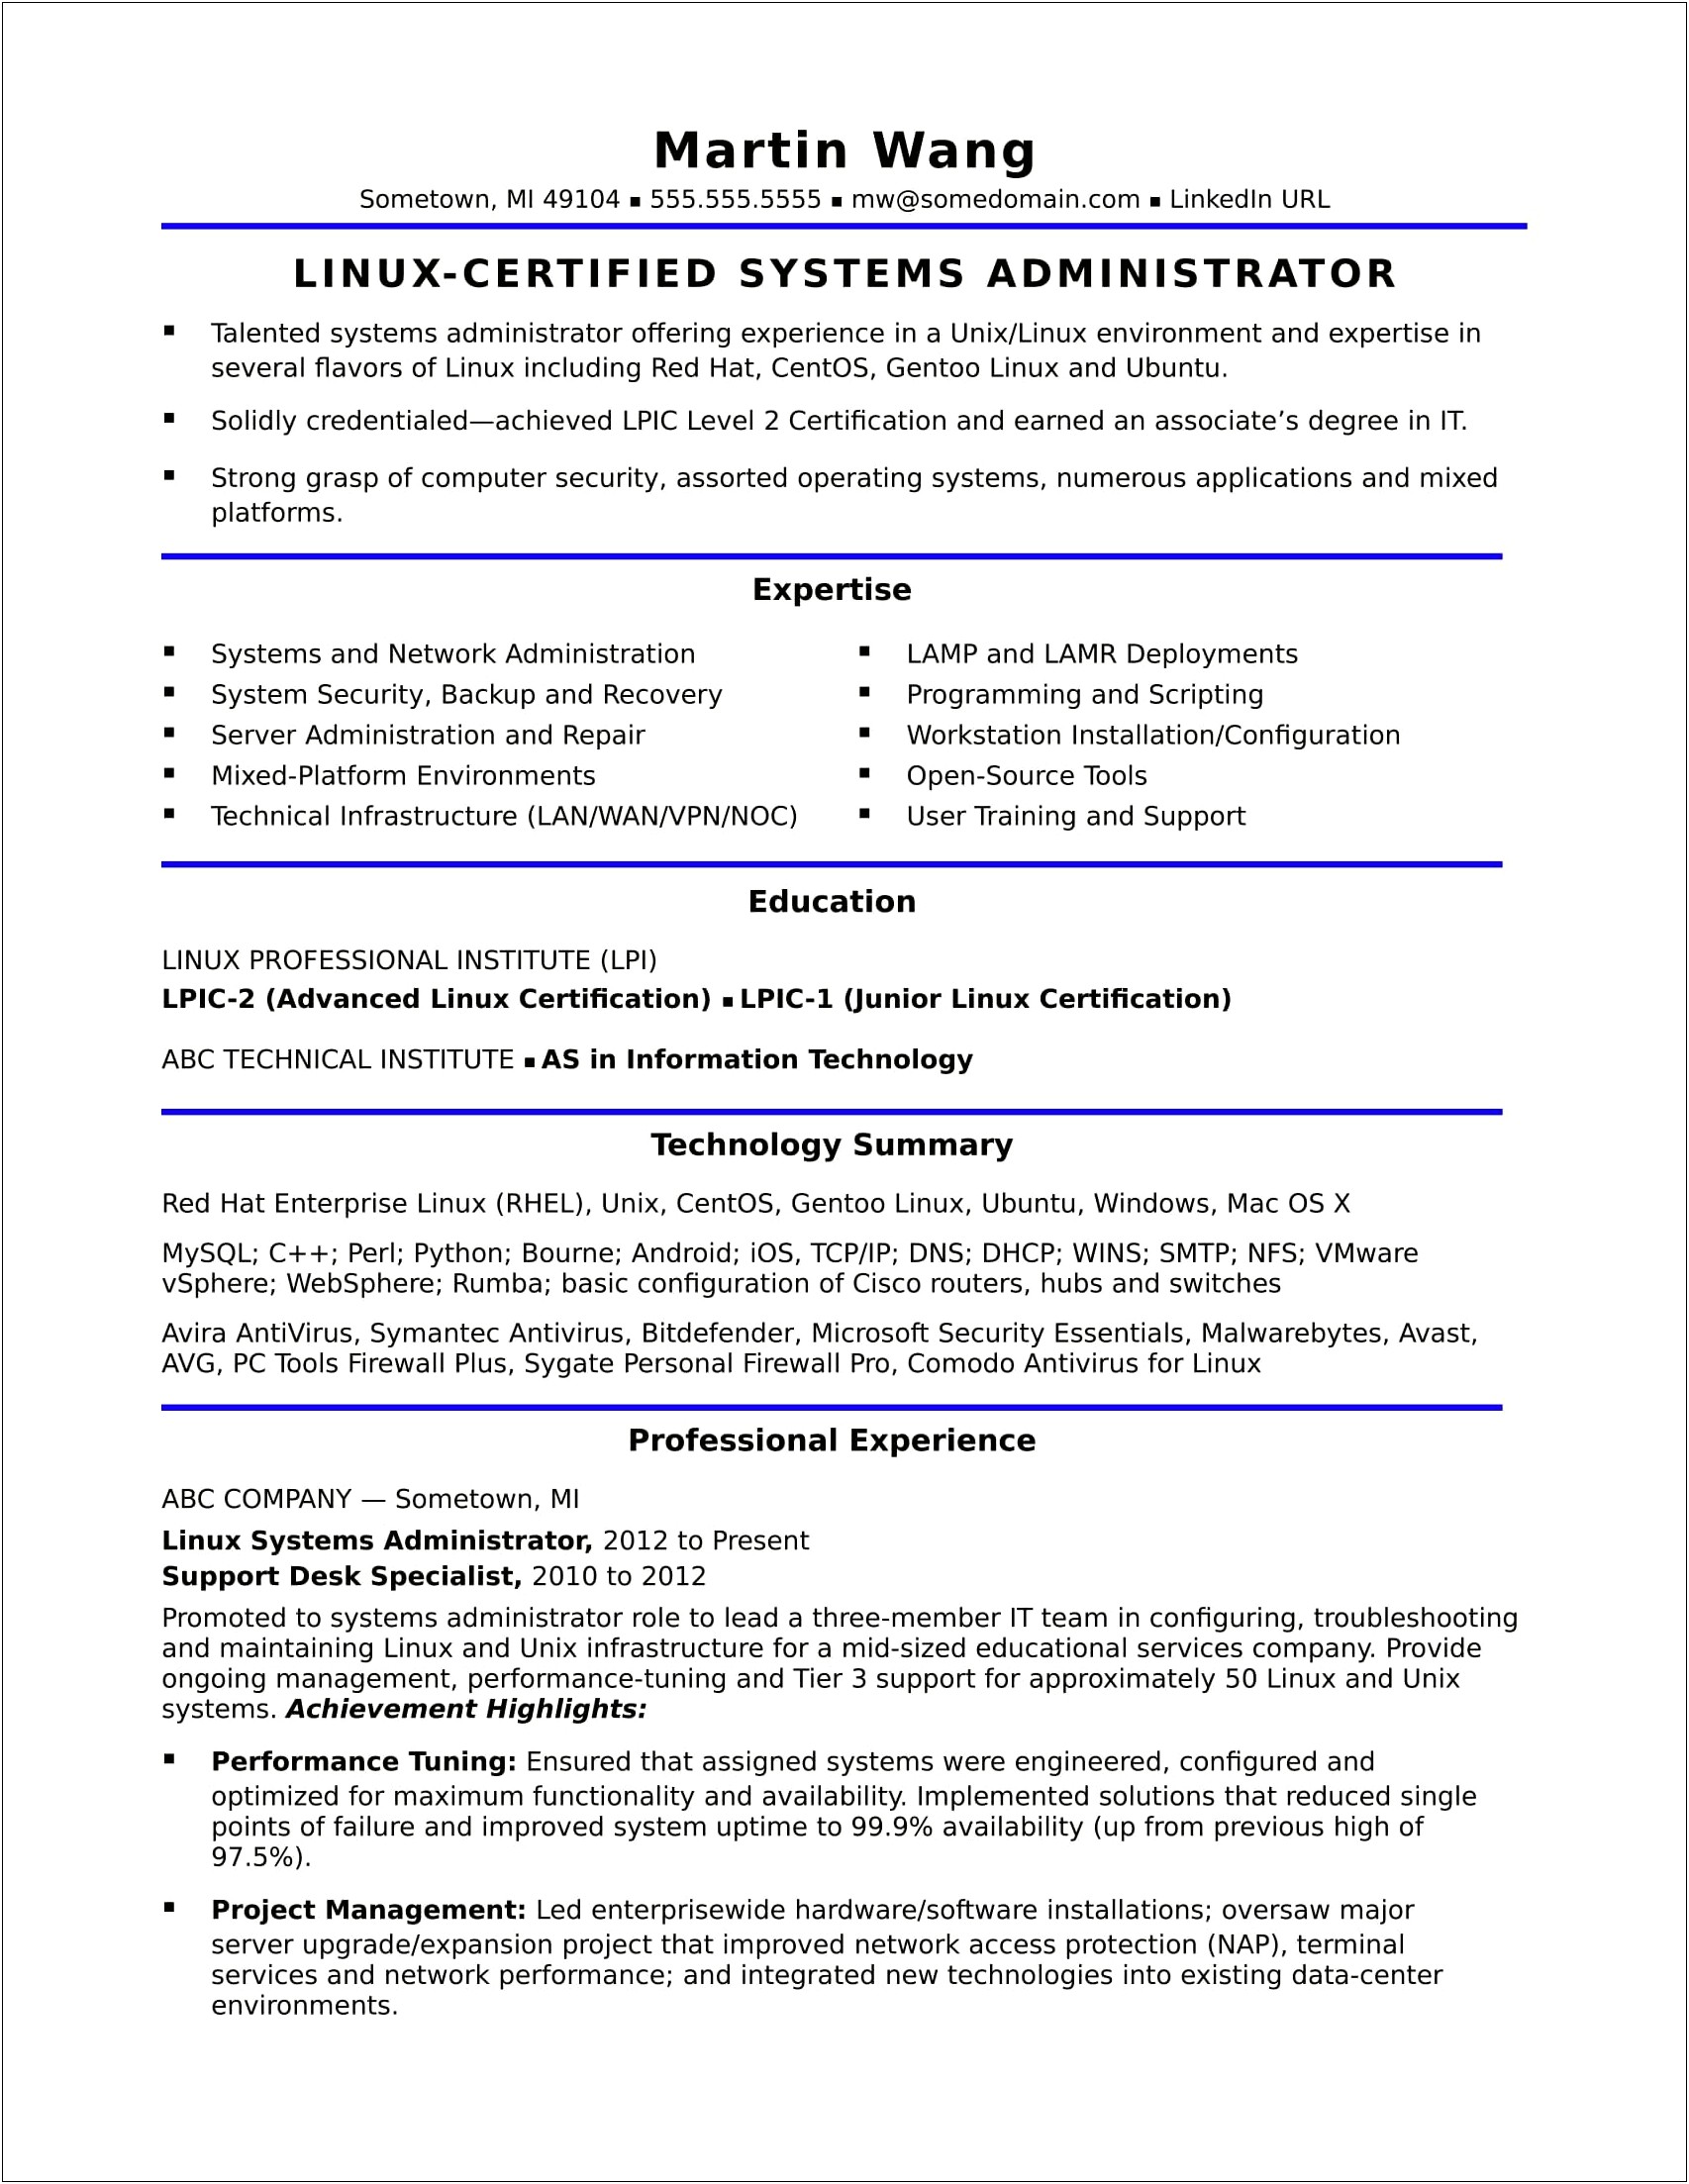 Sample Resume For Windows Server Administrator Fresher